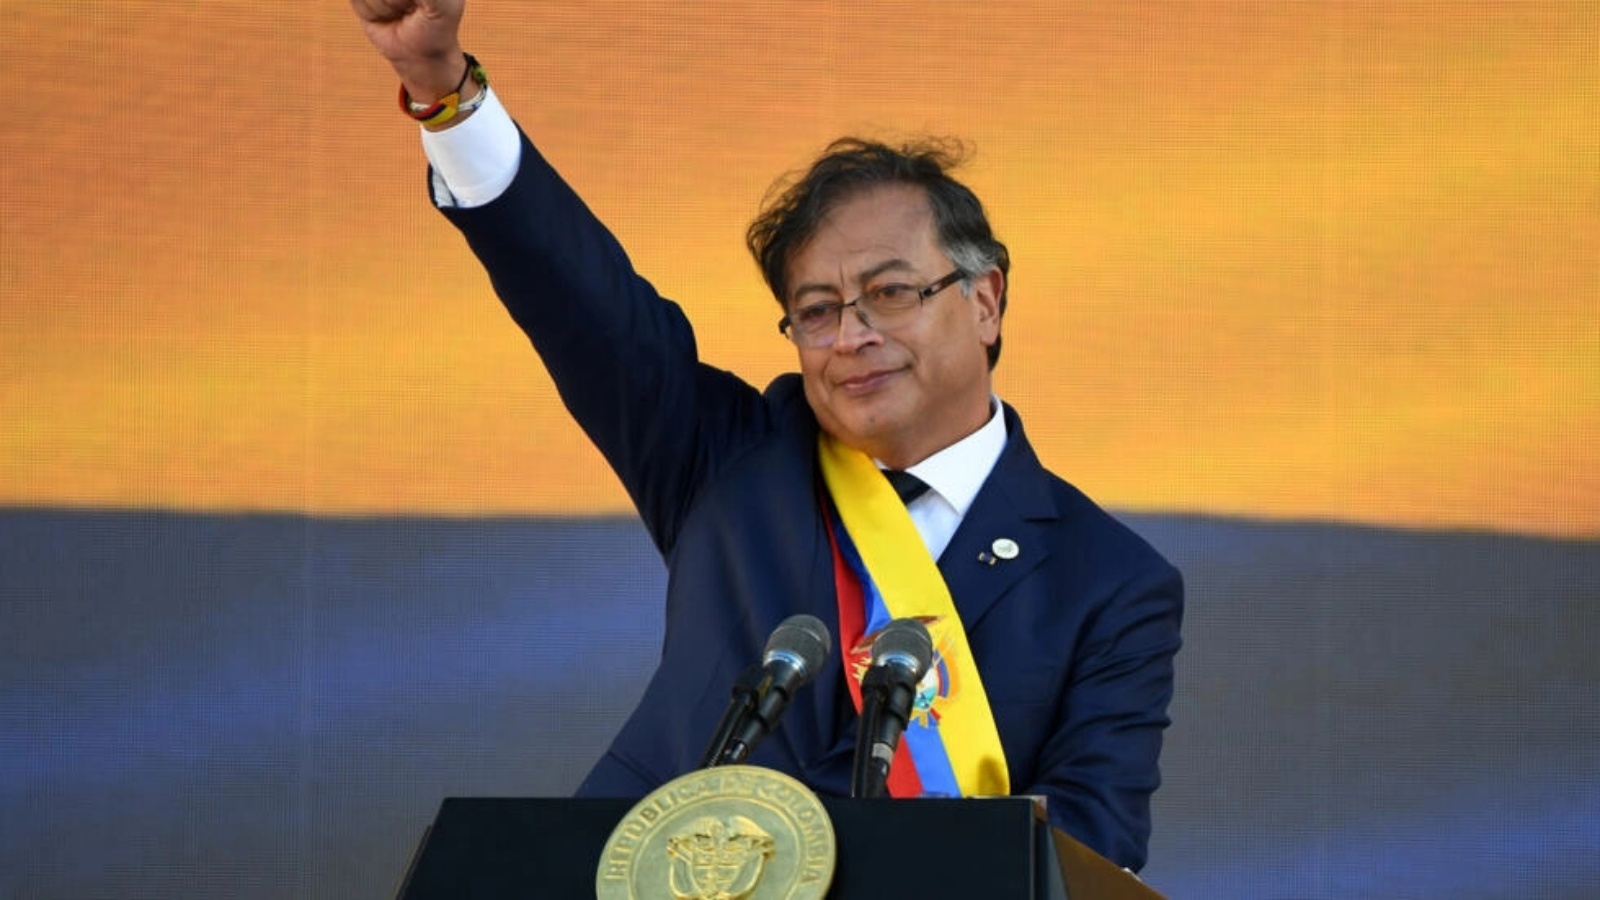 الرئيس الكولومبي غوستافو بيترو في ختام مراسم تنصيبه في بوغوتا في 7 أغسطس 2022 